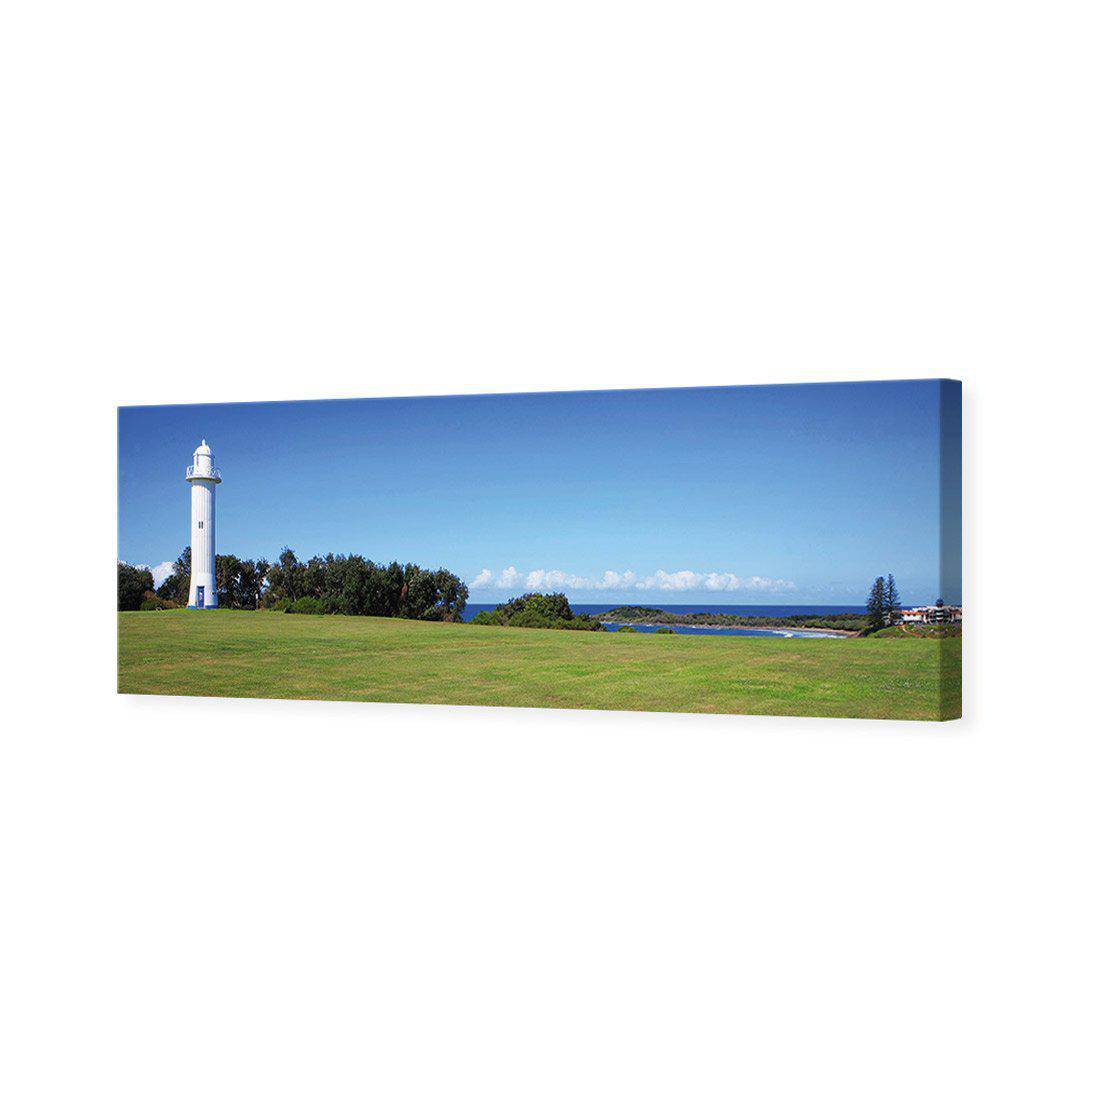 Yamba Lighthouse Canvas Art-Canvas-Wall Art Designs-60x20cm-Canvas - No Frame-Wall Art Designs